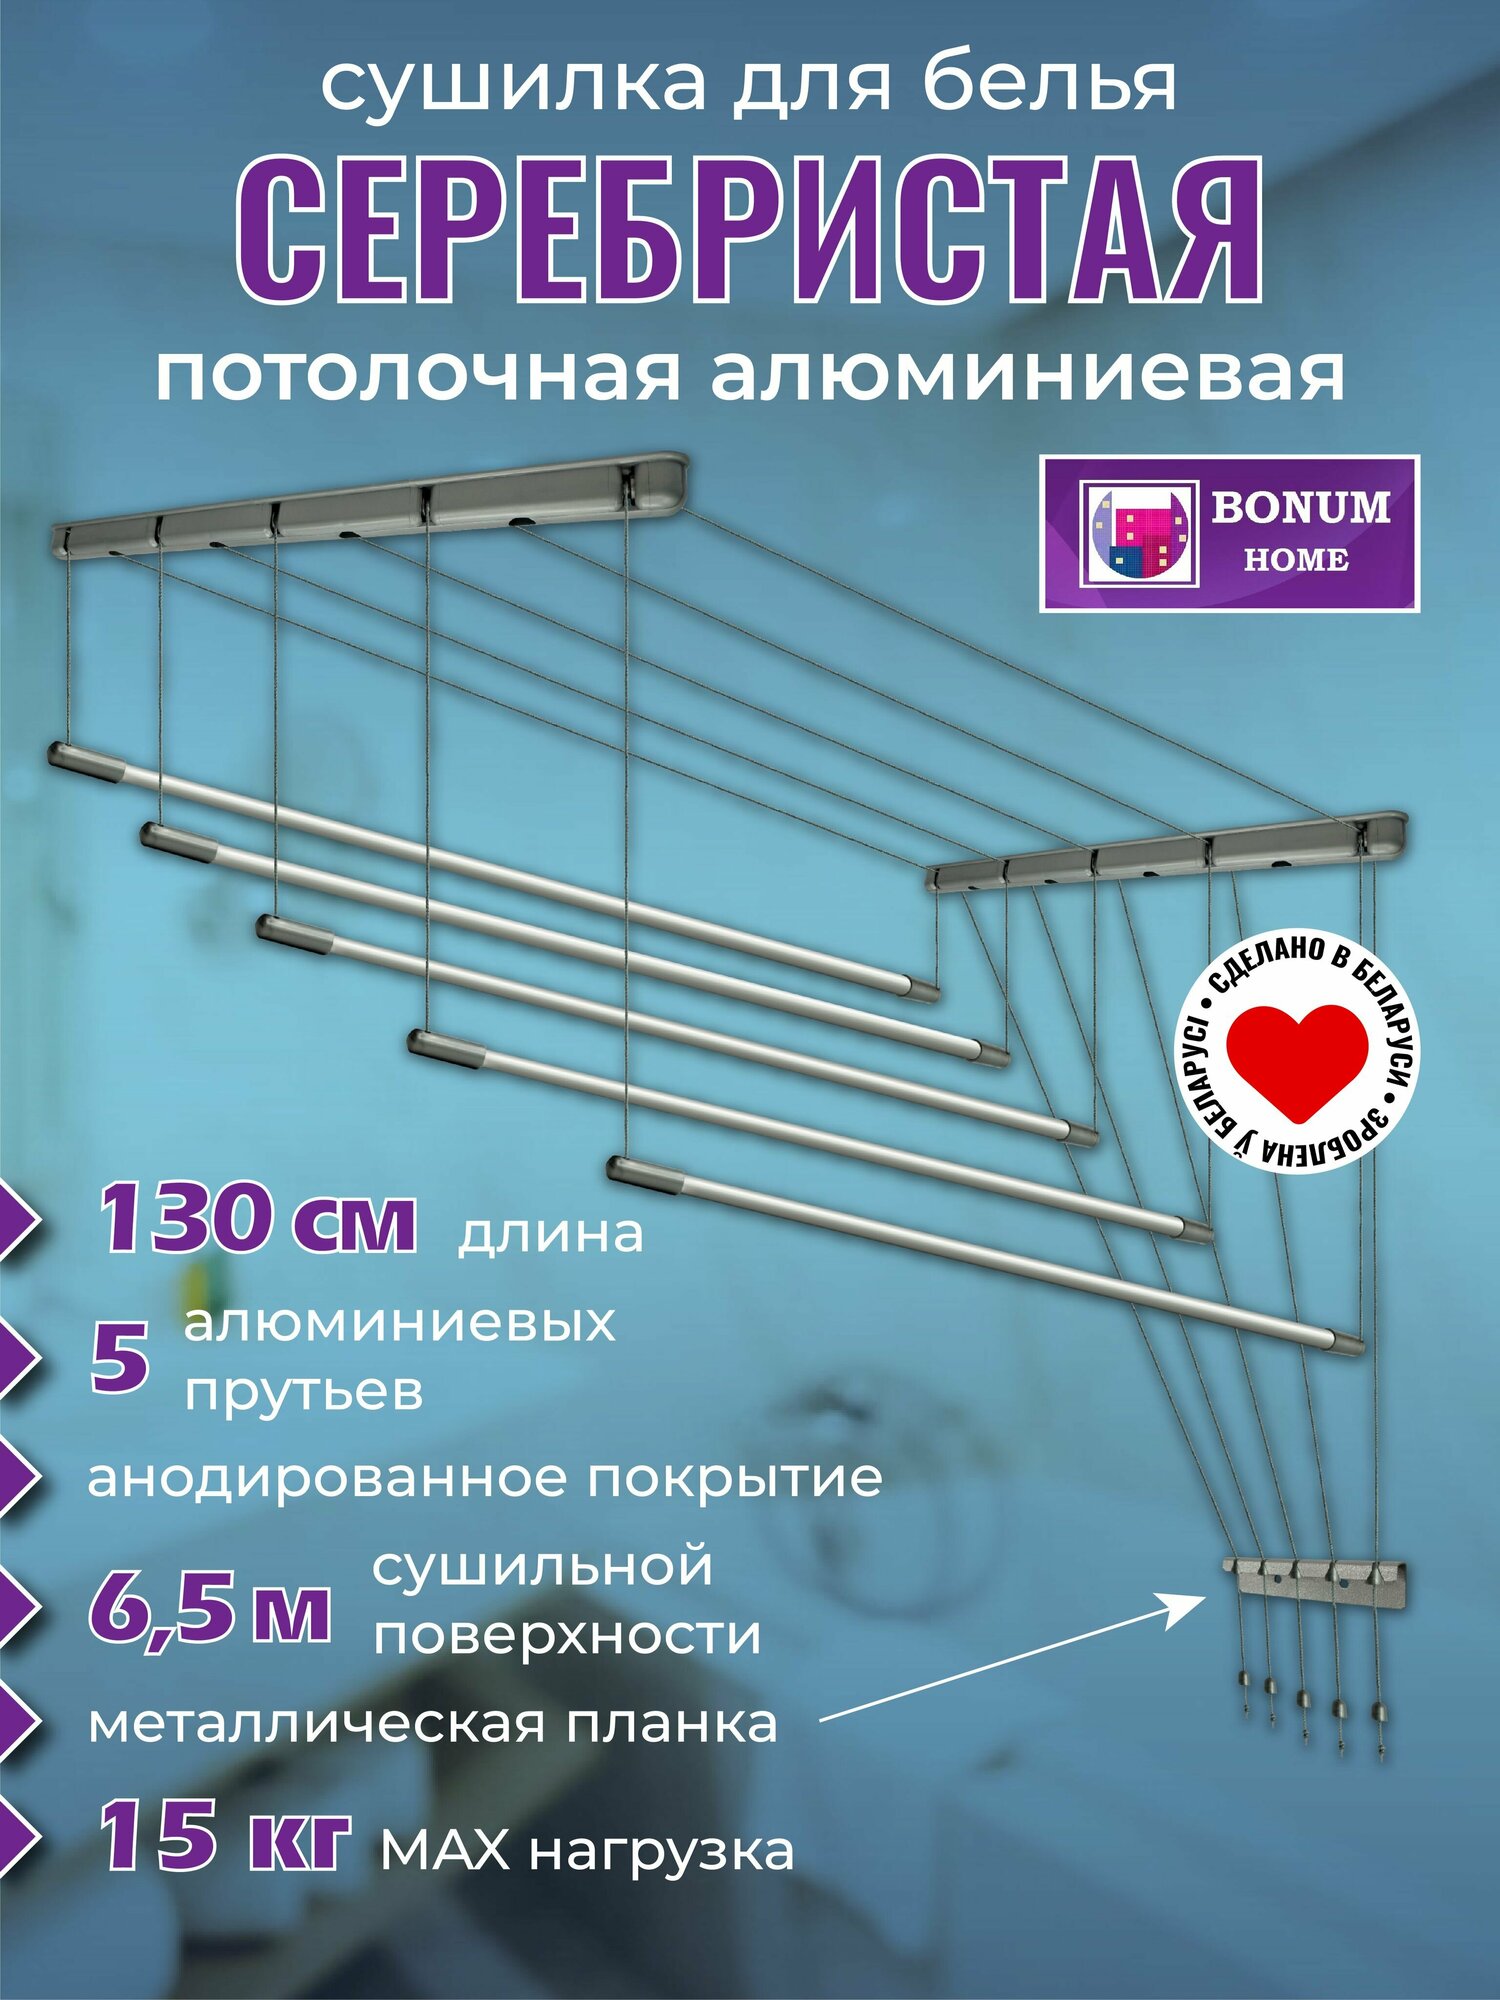 Сушилка для белья потолочная, серебристая, навесная, алюминиевая-1,3м,5 прутьев. Беларусь